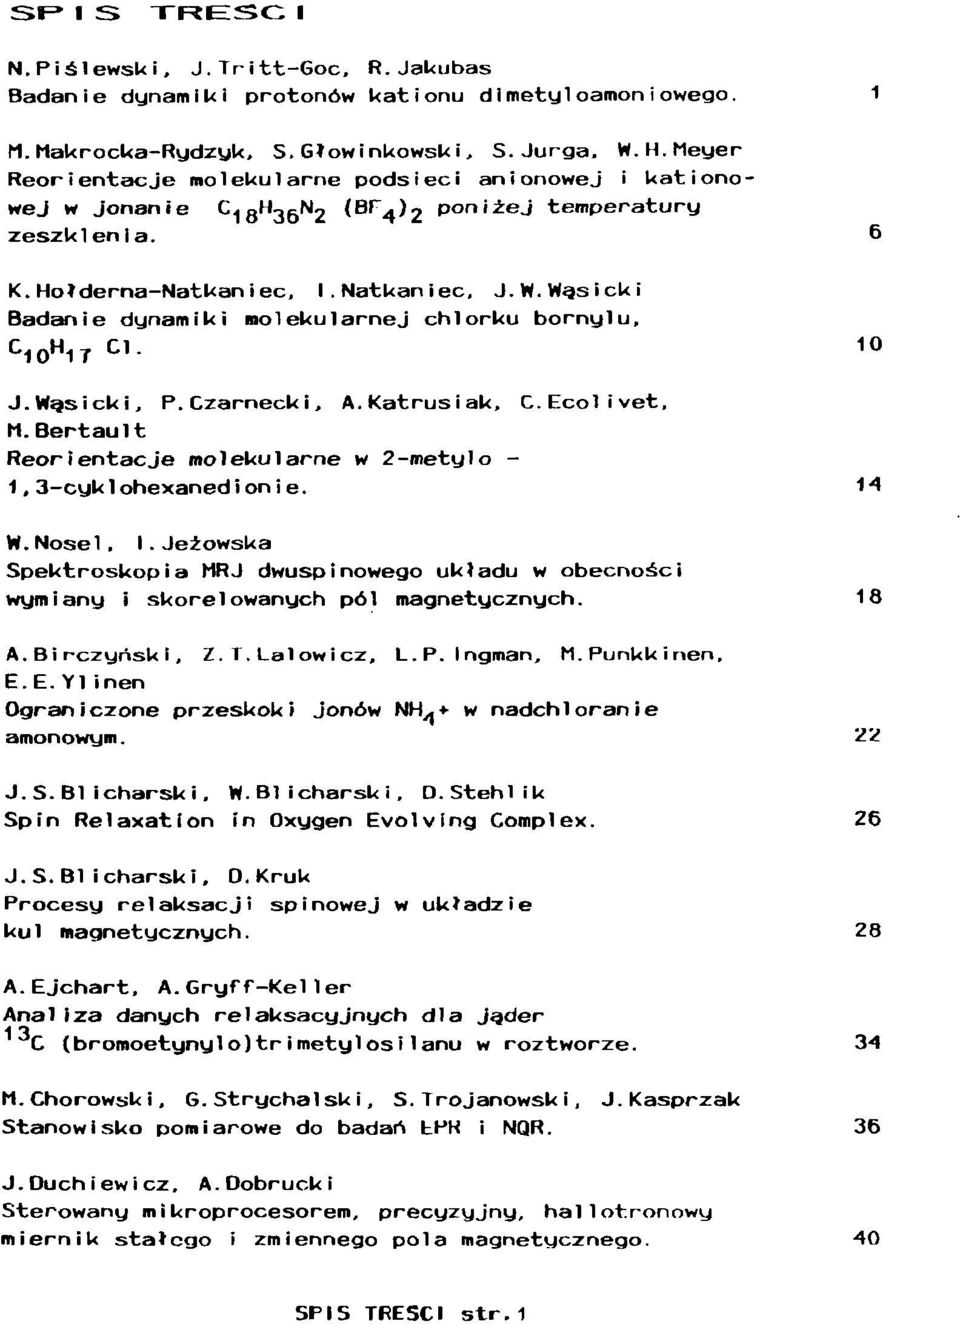 Wąsicki Badanie dynamiki molekularnej chlorku borny1 u, C 10 H 1T Cl. 10 J.Wasicki, P.Czarnecki, A.KatrusiaU, C.Ecolivet, M.Bertault Reorientacje molekularne w 2-metylo - 1,3-cyklohexanedionie. 14 W.